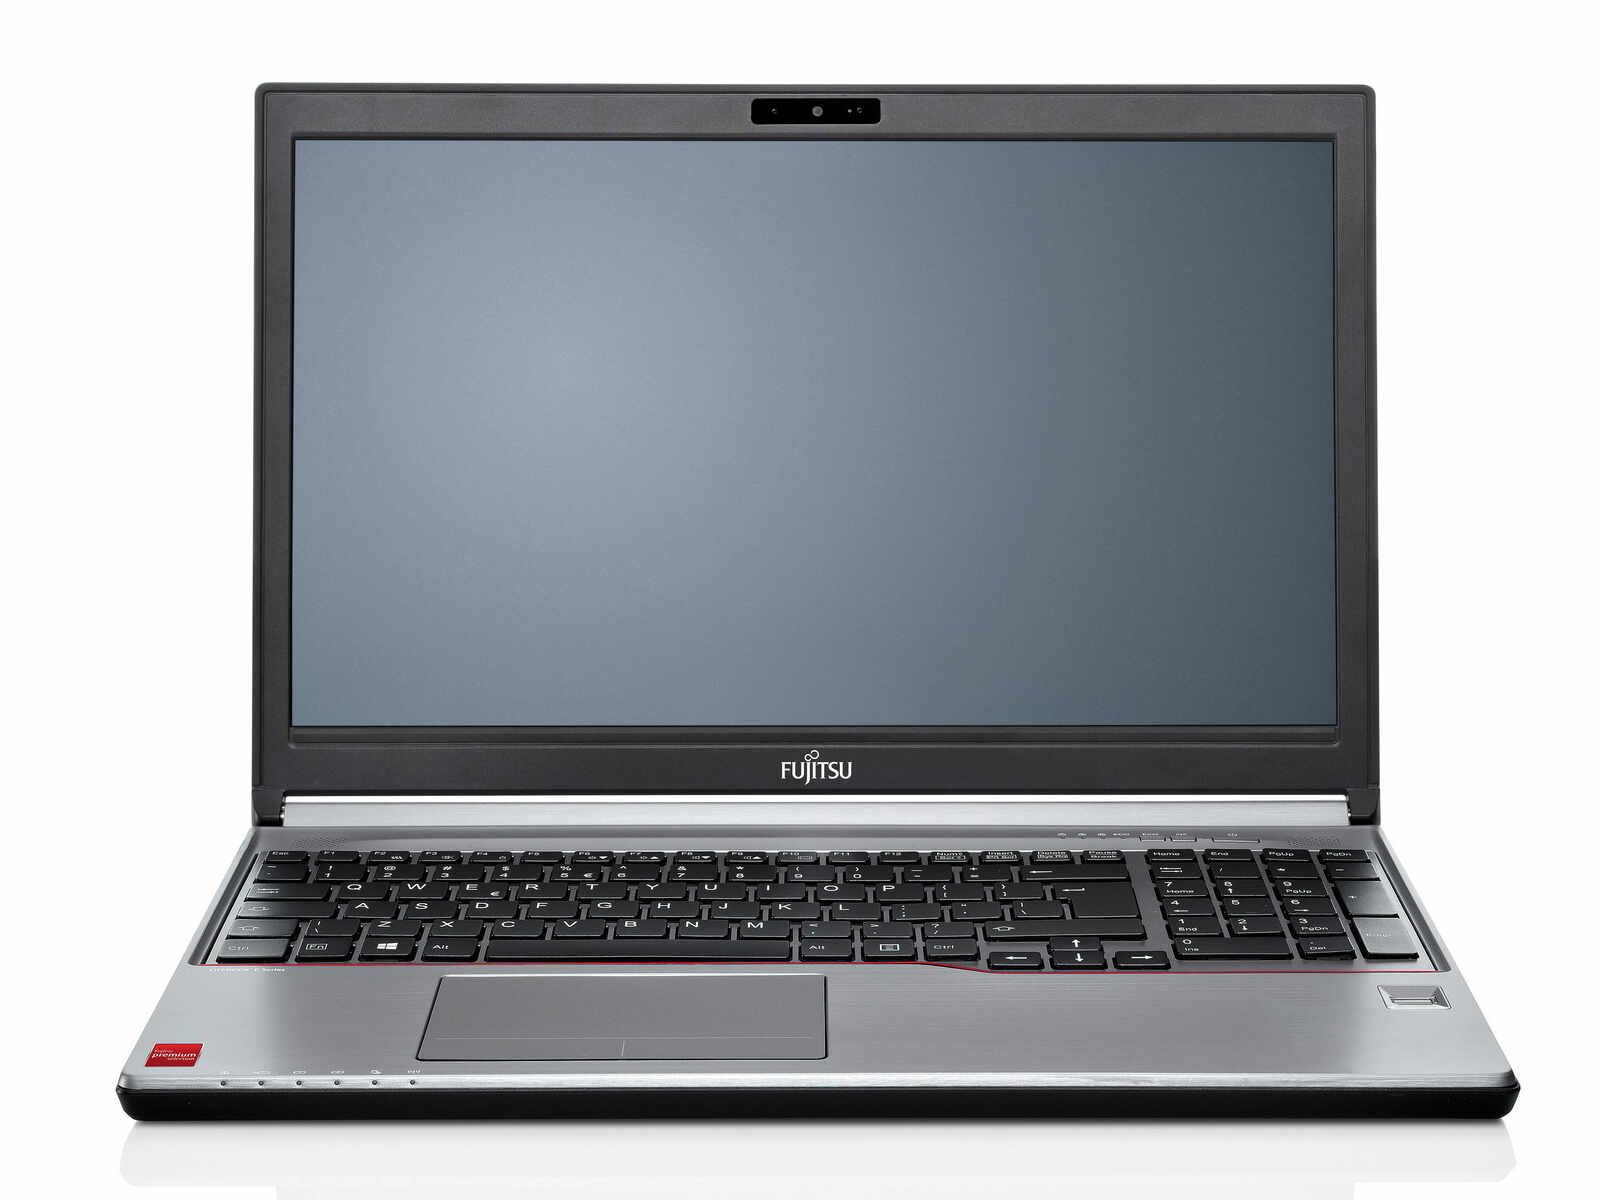 Laptop FUJITSU SIEMENS Lifebook E754, Intel Core i5-4200M 2.50GHz, 8GB DDR3, 240GB SSD, DVD-RW, 15.6 Inch, Tastatura Numerica, Fara Webcam, Grad A-